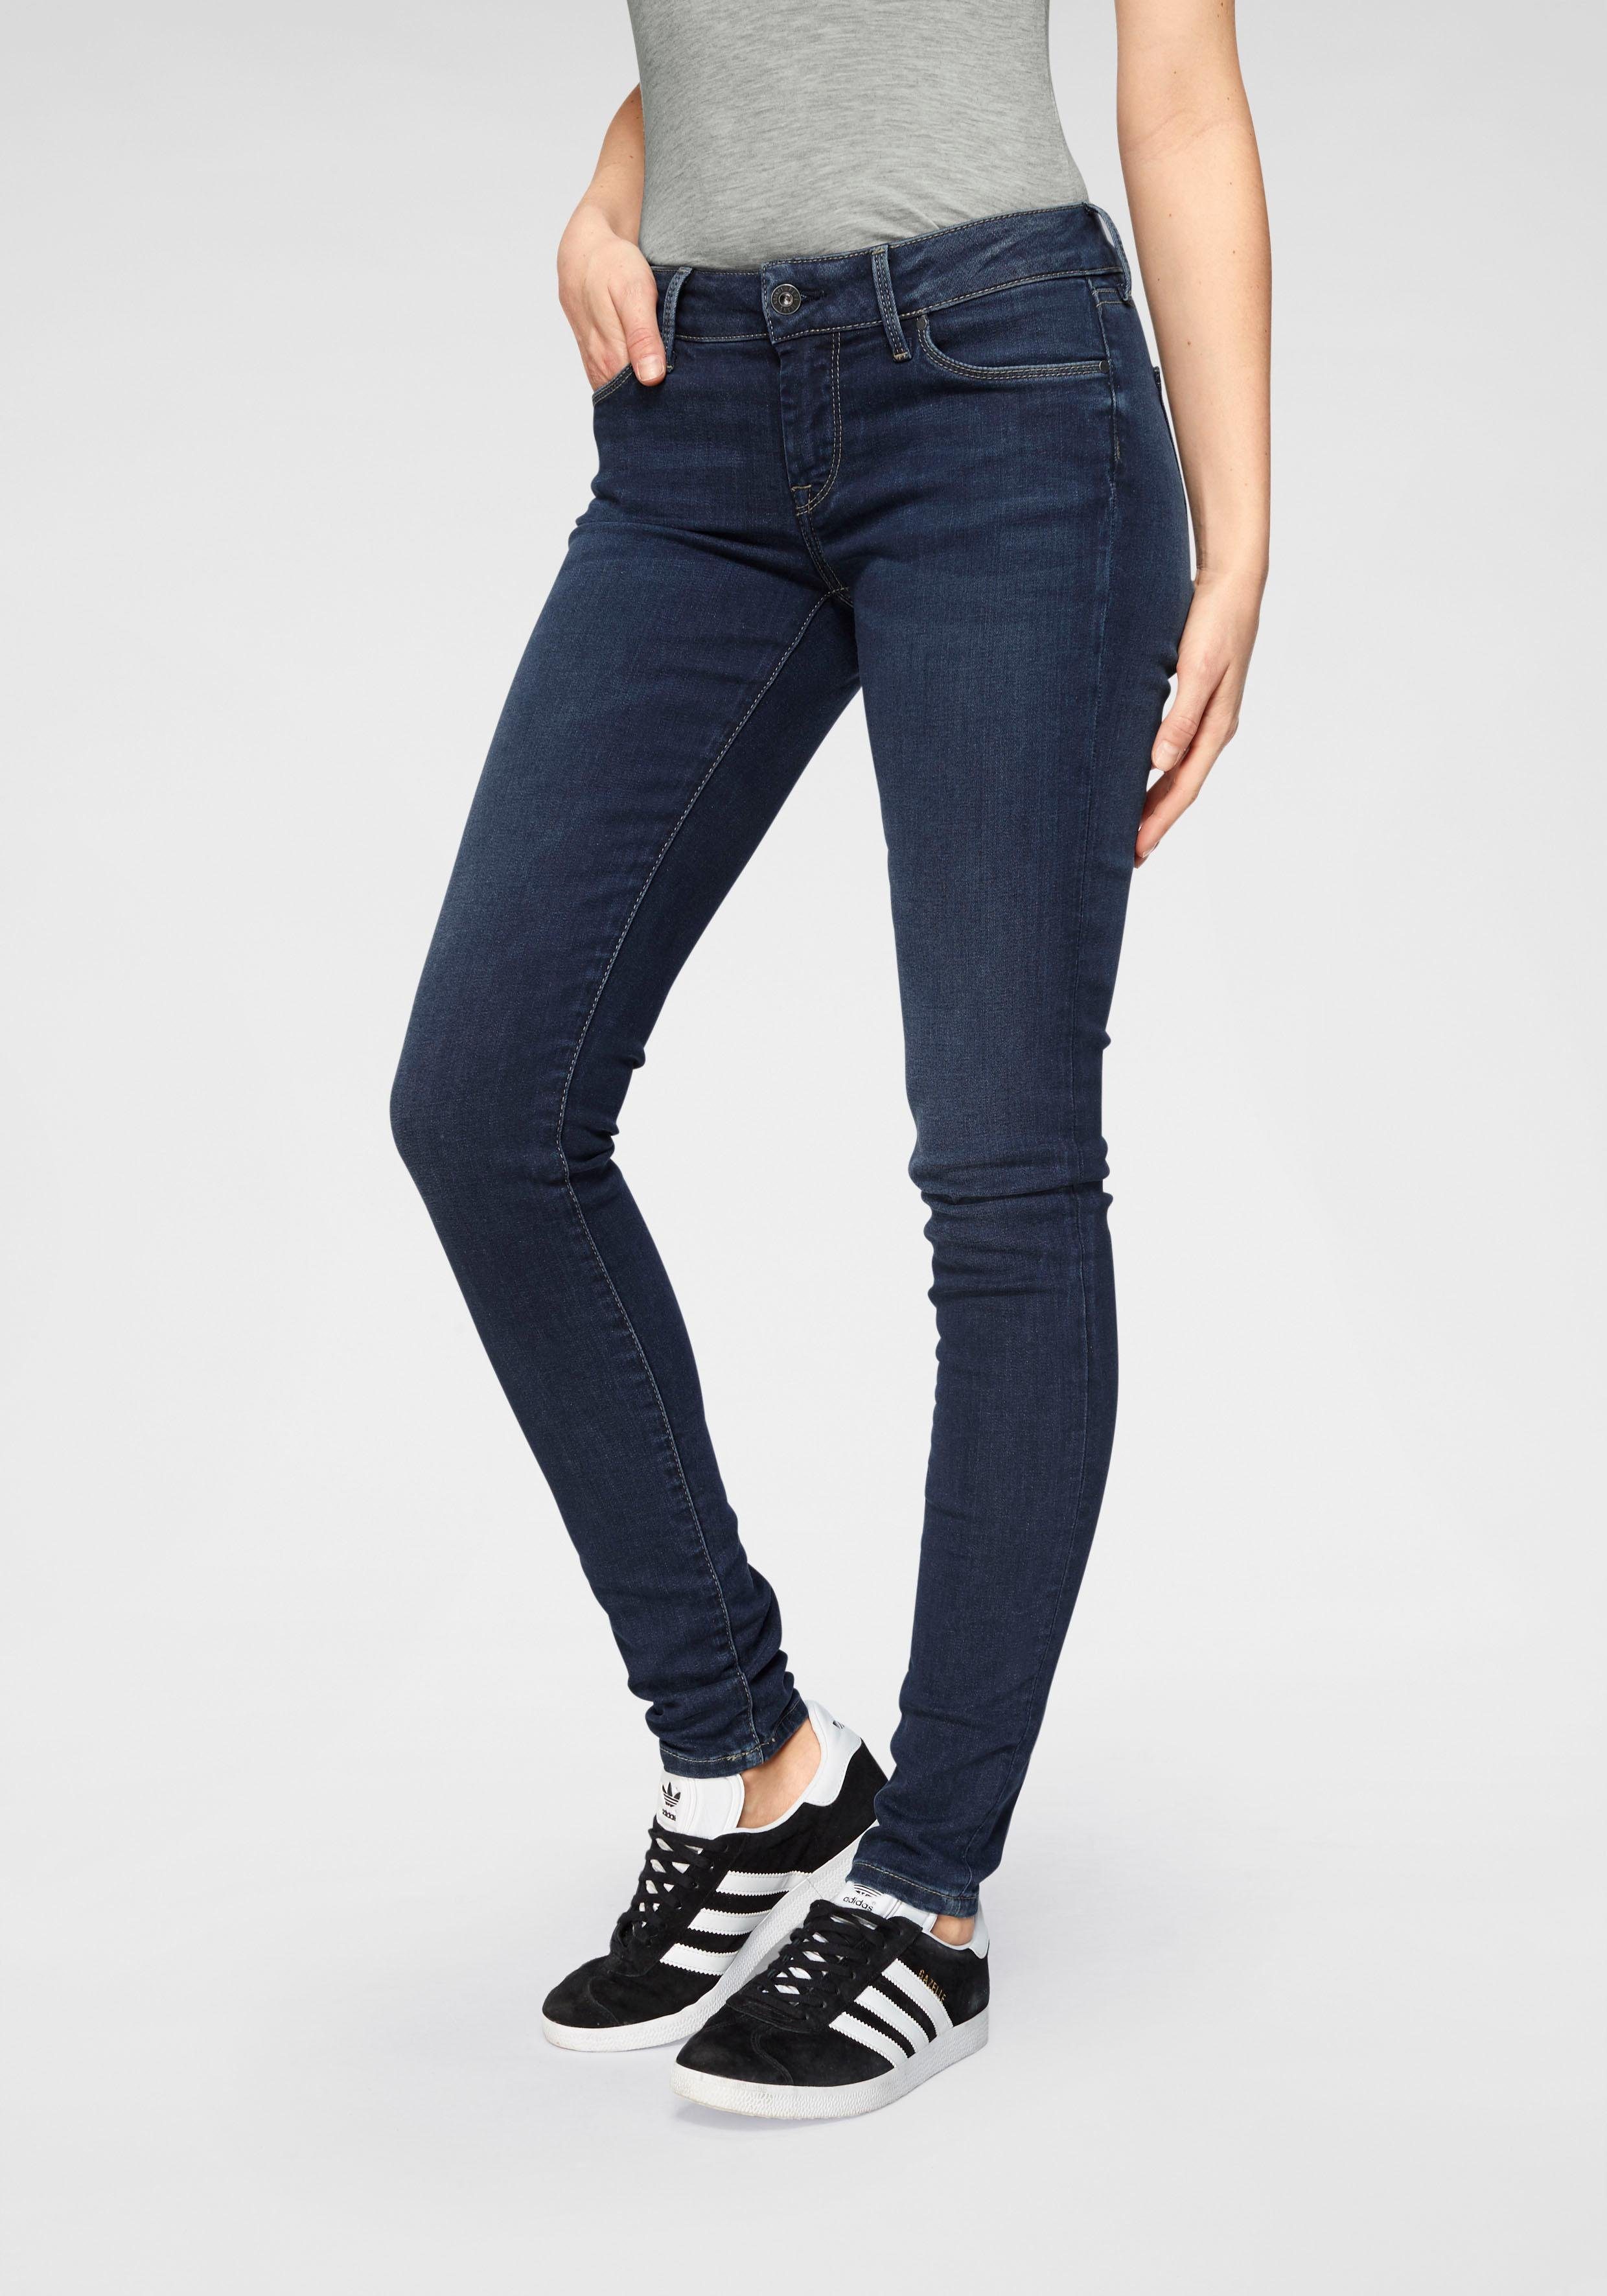 Pepe Jeans Skinny-fit-Jeans SOHO im 5-Pocket-Stil mit 1-Knopf Bund und Stretch-Anteil H45 dark used worn | 